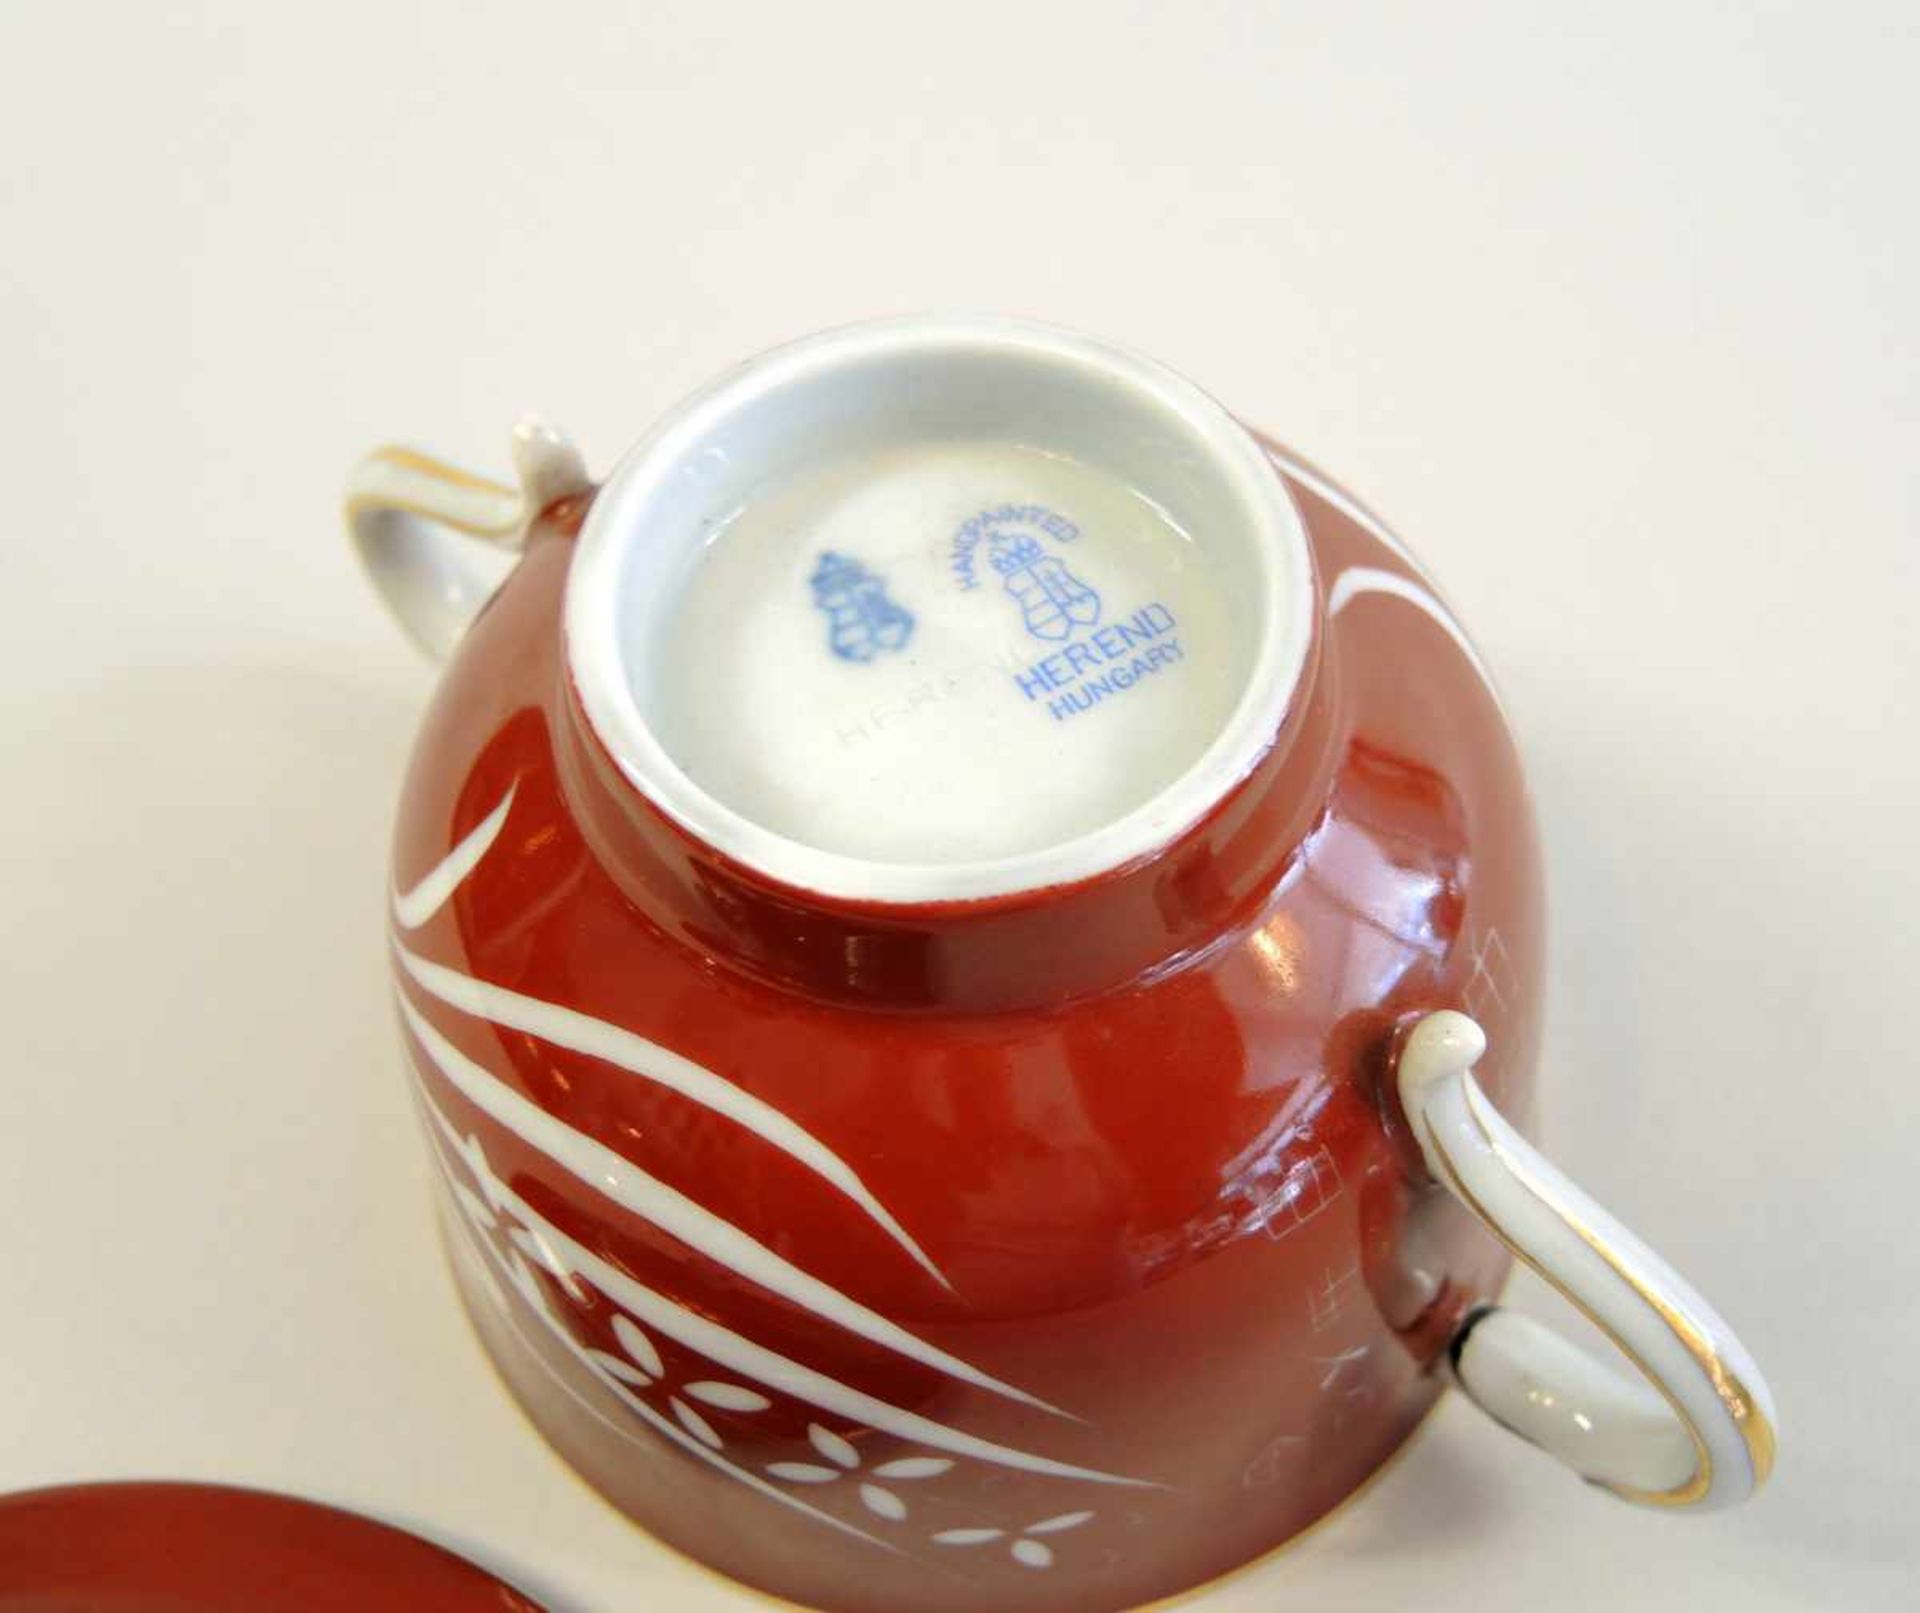 Kleine Herend-Suppentasse Porzellan mit Esterhazy-Dekor in rot und weiß, dezent gold staffiert. - Bild 4 aus 5